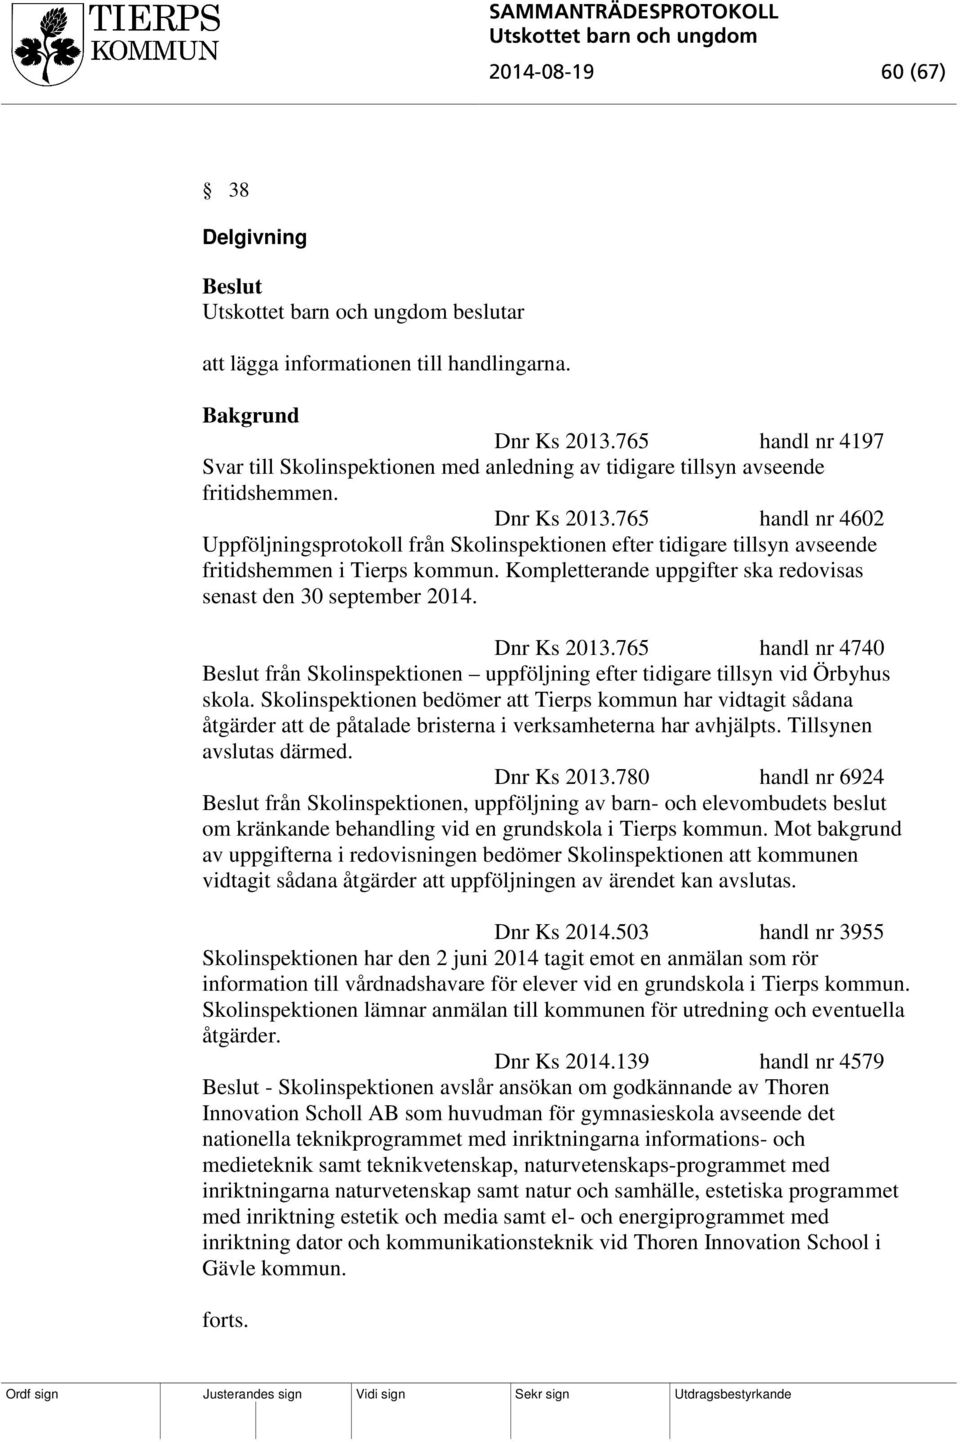 765 handl nr 4602 Uppföljningsprotokoll från Skolinspektionen efter tidigare tillsyn avseende fritidshemmen i Tierps kommun. Kompletterande uppgifter ska redovisas senast den 30 september 2014.